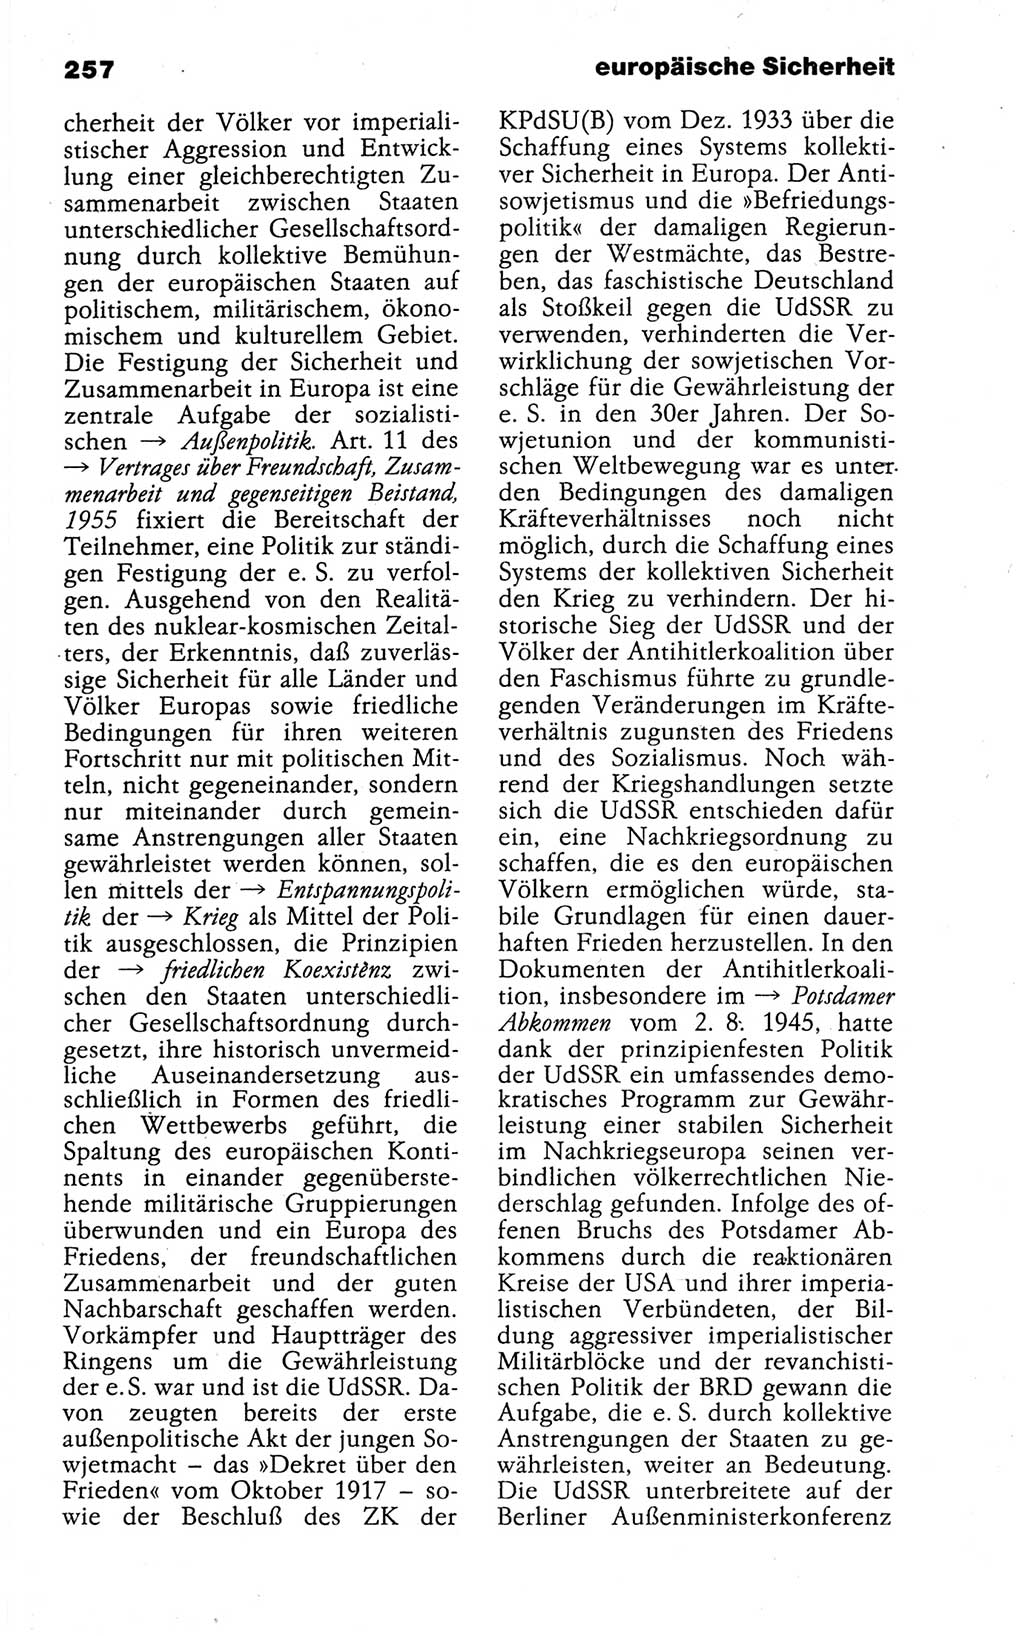 Kleines politisches Wörterbuch [Deutsche Demokratische Republik (DDR)] 1988, Seite 257 (Kl. pol. Wb. DDR 1988, S. 257)